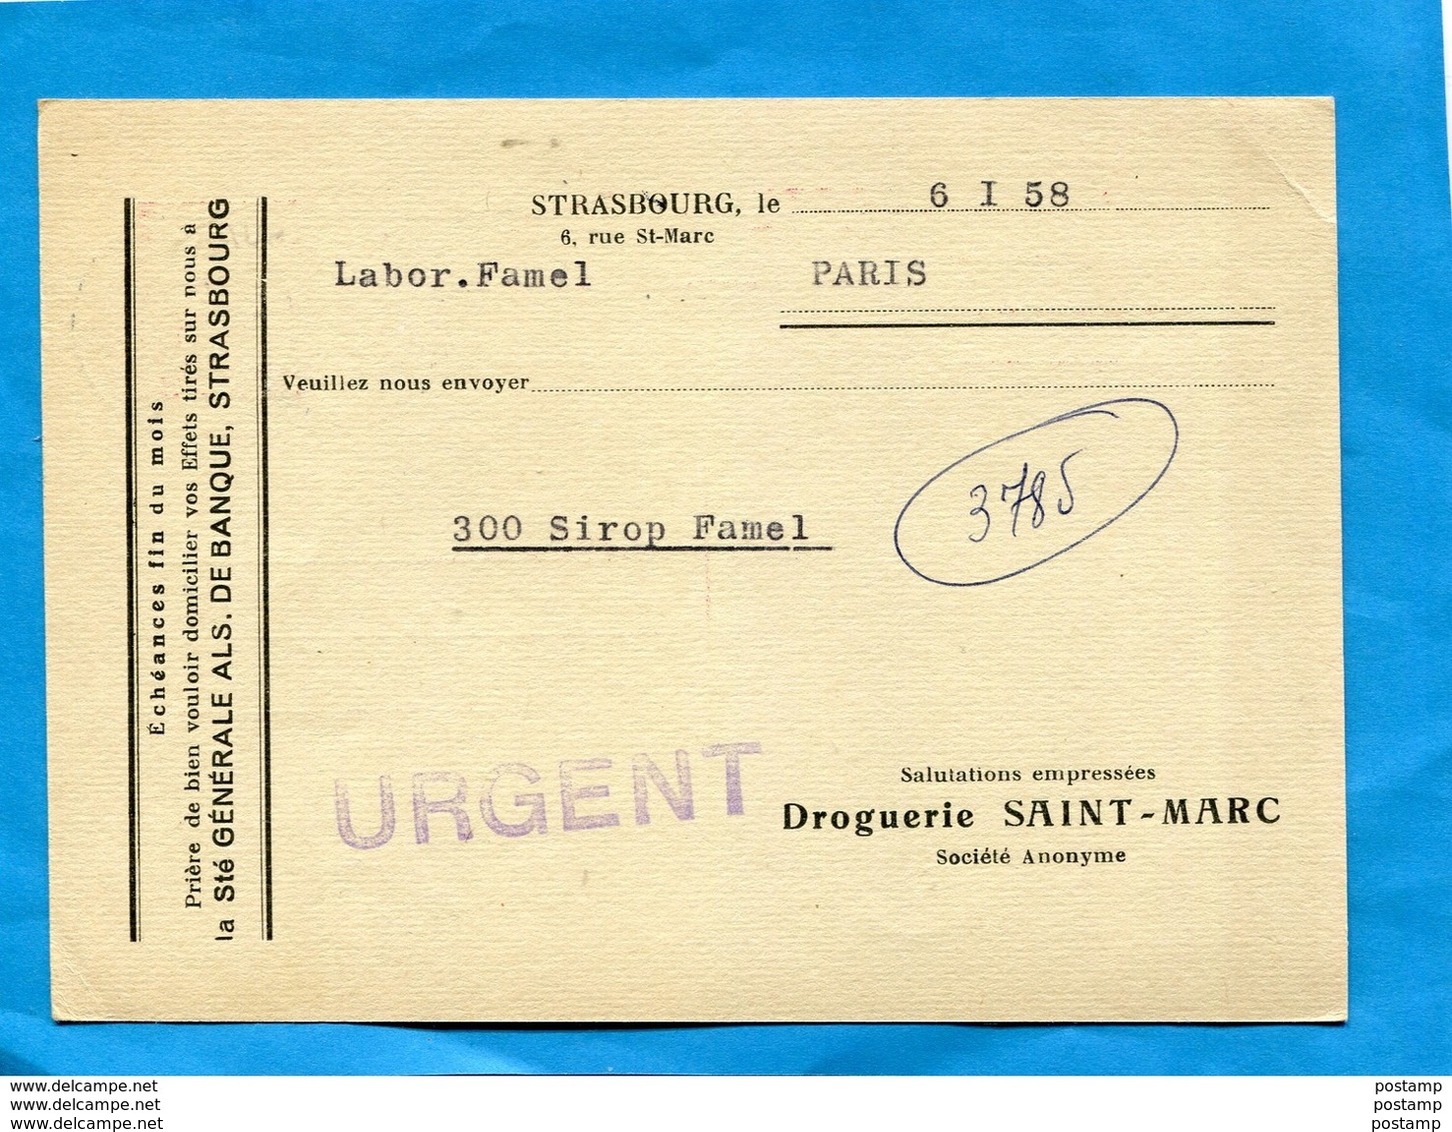 Entier Postal- Stationnery-carte15frs Marianne De Muller-repiq-Droguerie St Marc +flamme1958 STRASBOURG-port - Enveloppes Repiquages (avant 1995)